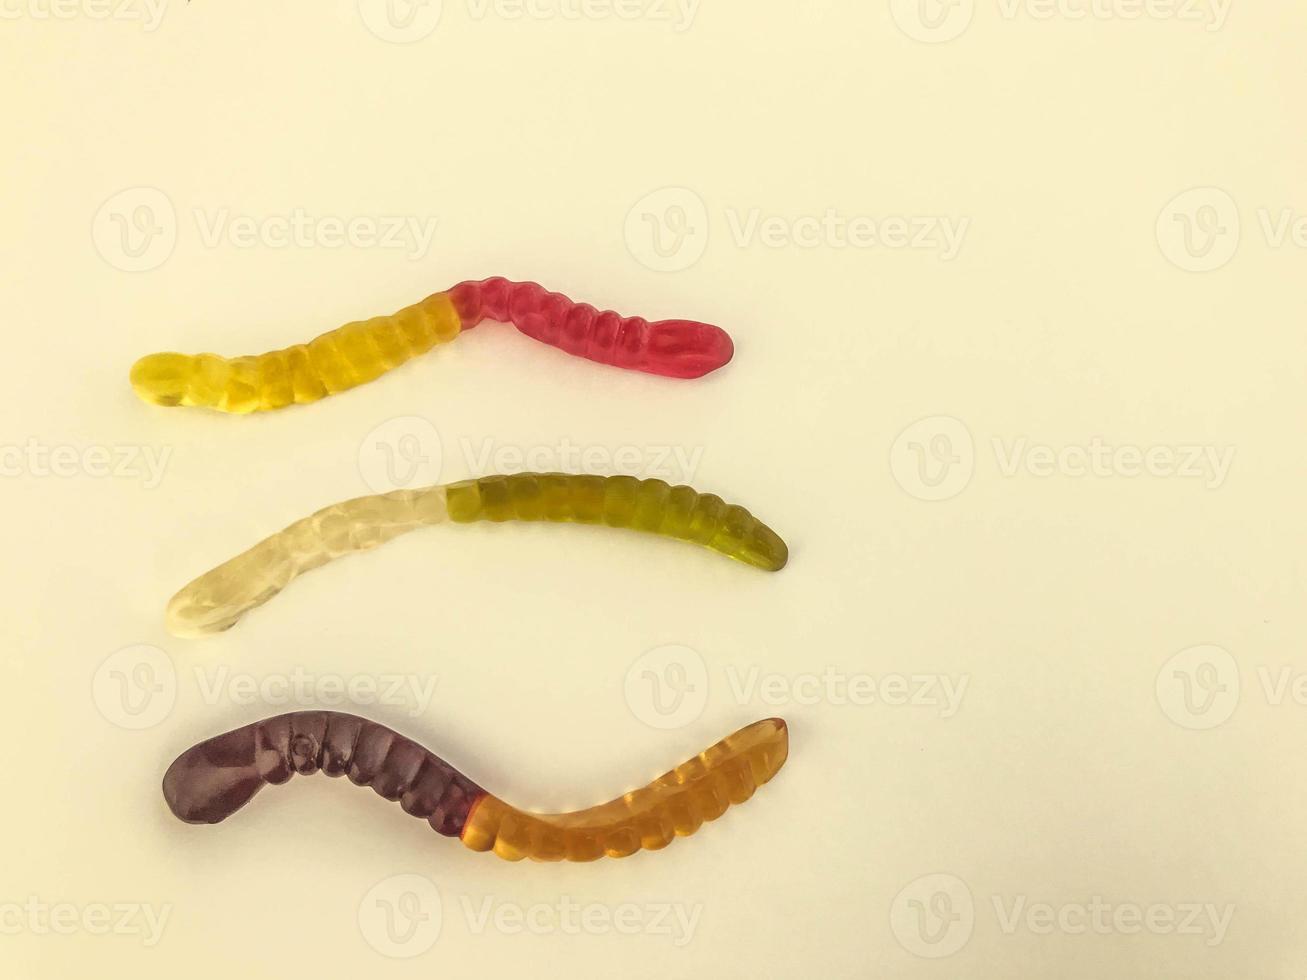 gallertartige Würmer in verschiedenen Farben liegen auf einem gelben, matten Hintergrund. Gummibonbons in Form von langen Würmern in leuchtender Farbe. köstliches und appetitliches kalorienreiches Dessert foto